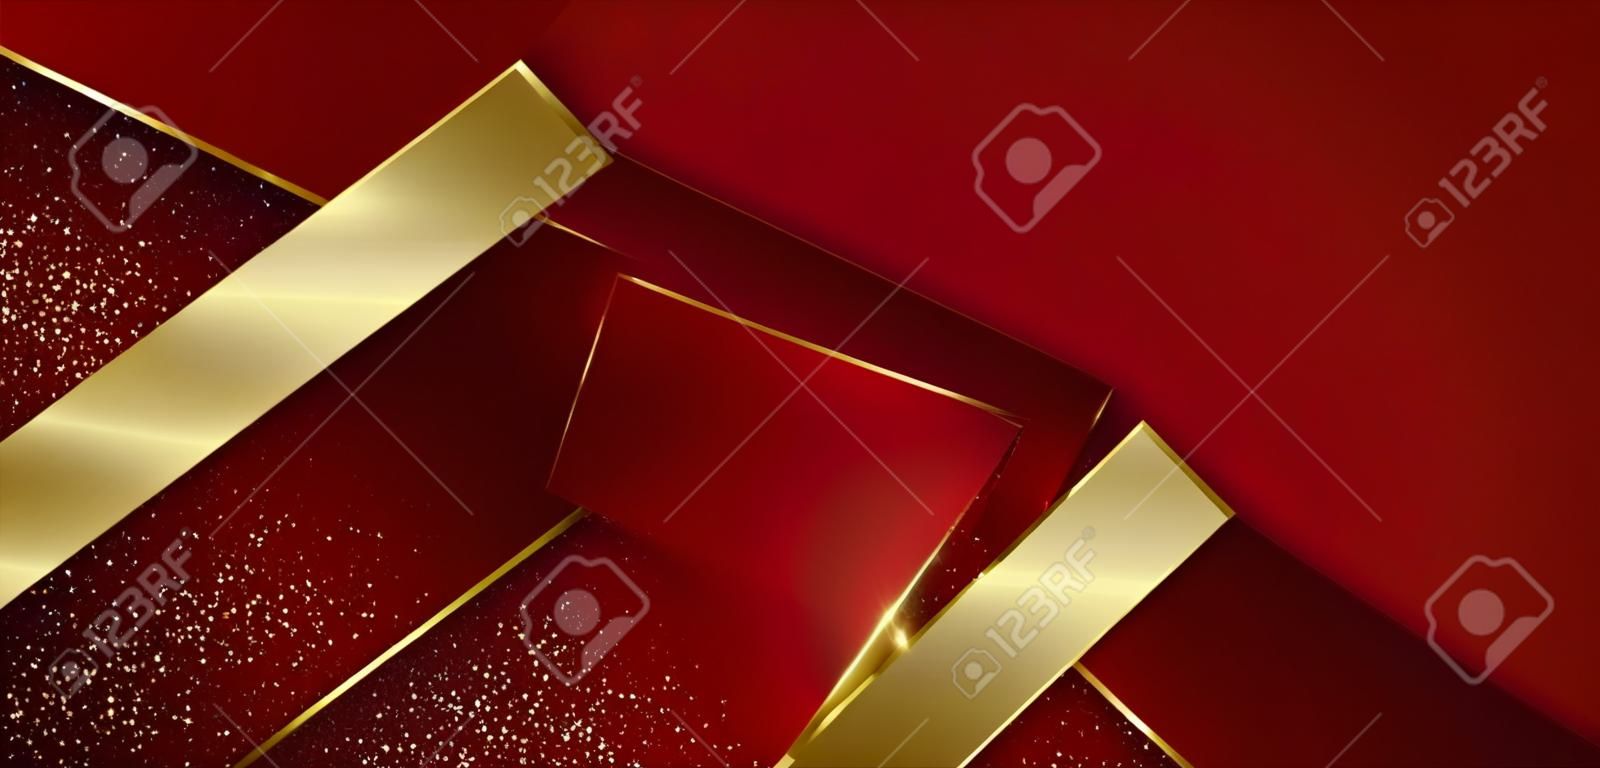 Streszczenie 3d nowoczesny luksusowy szablon czerwony kolor i złota strzałka tło ze złotym brokatem linii lekki blask. ilustracja wektorowa